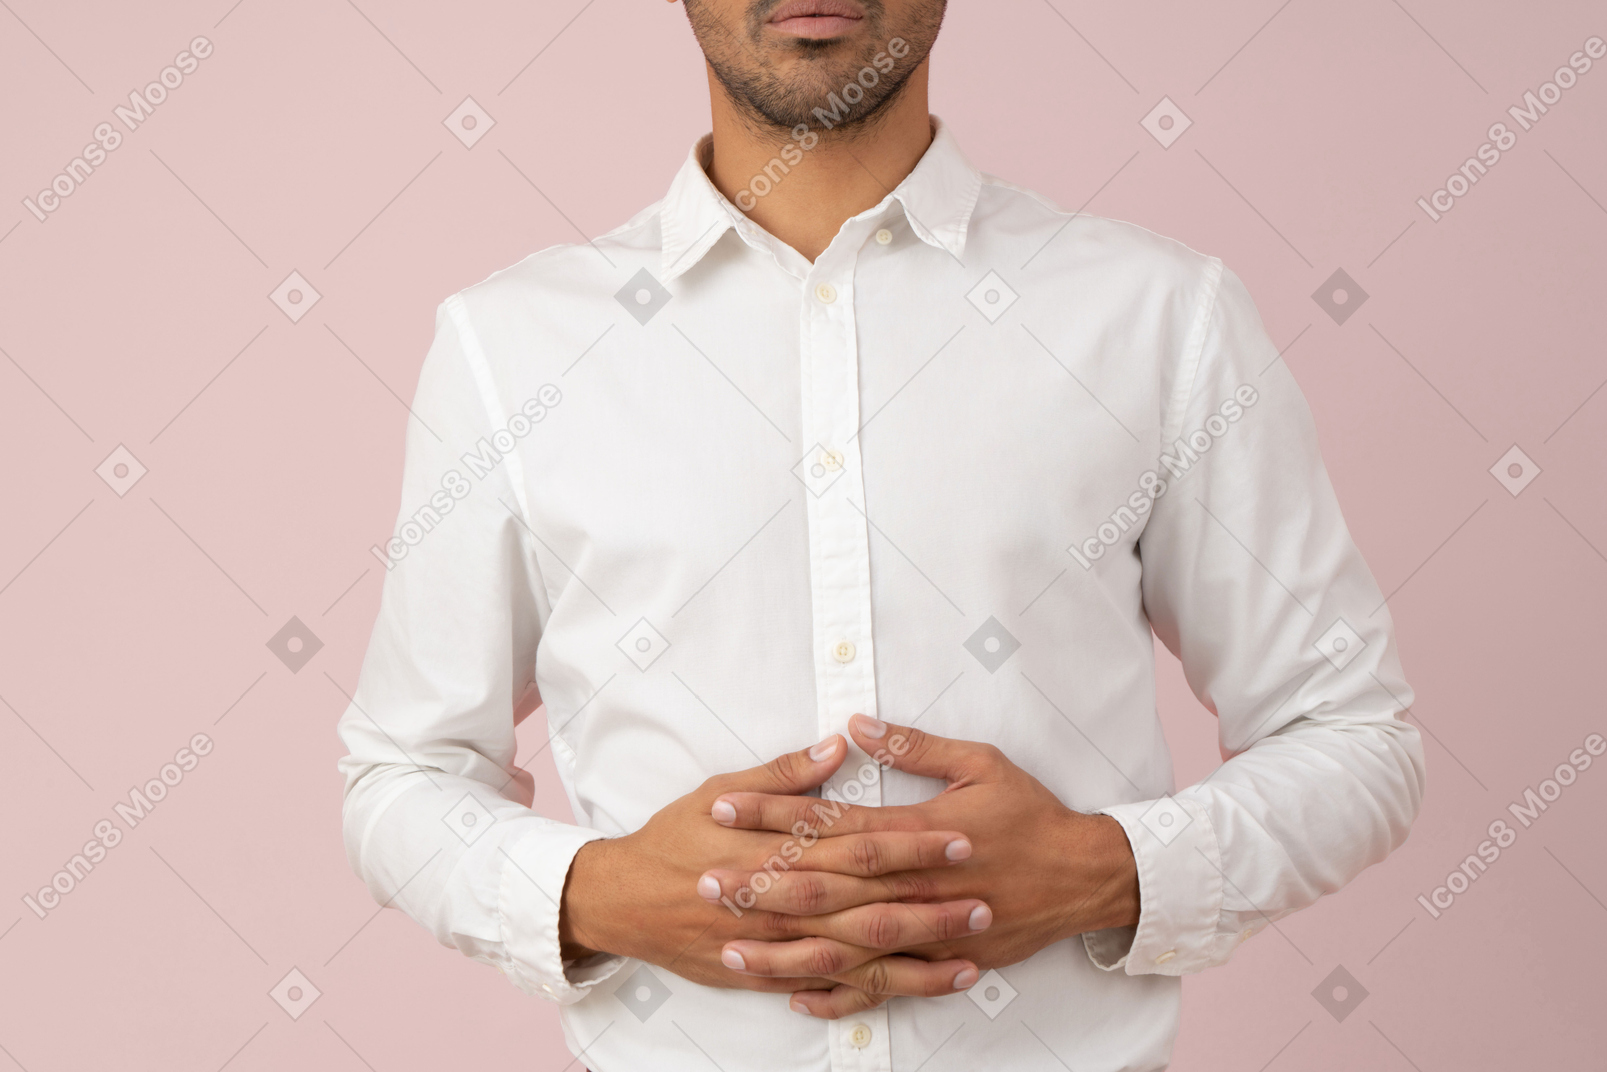 흰 셔츠에 젊은 남자의 자른 사진